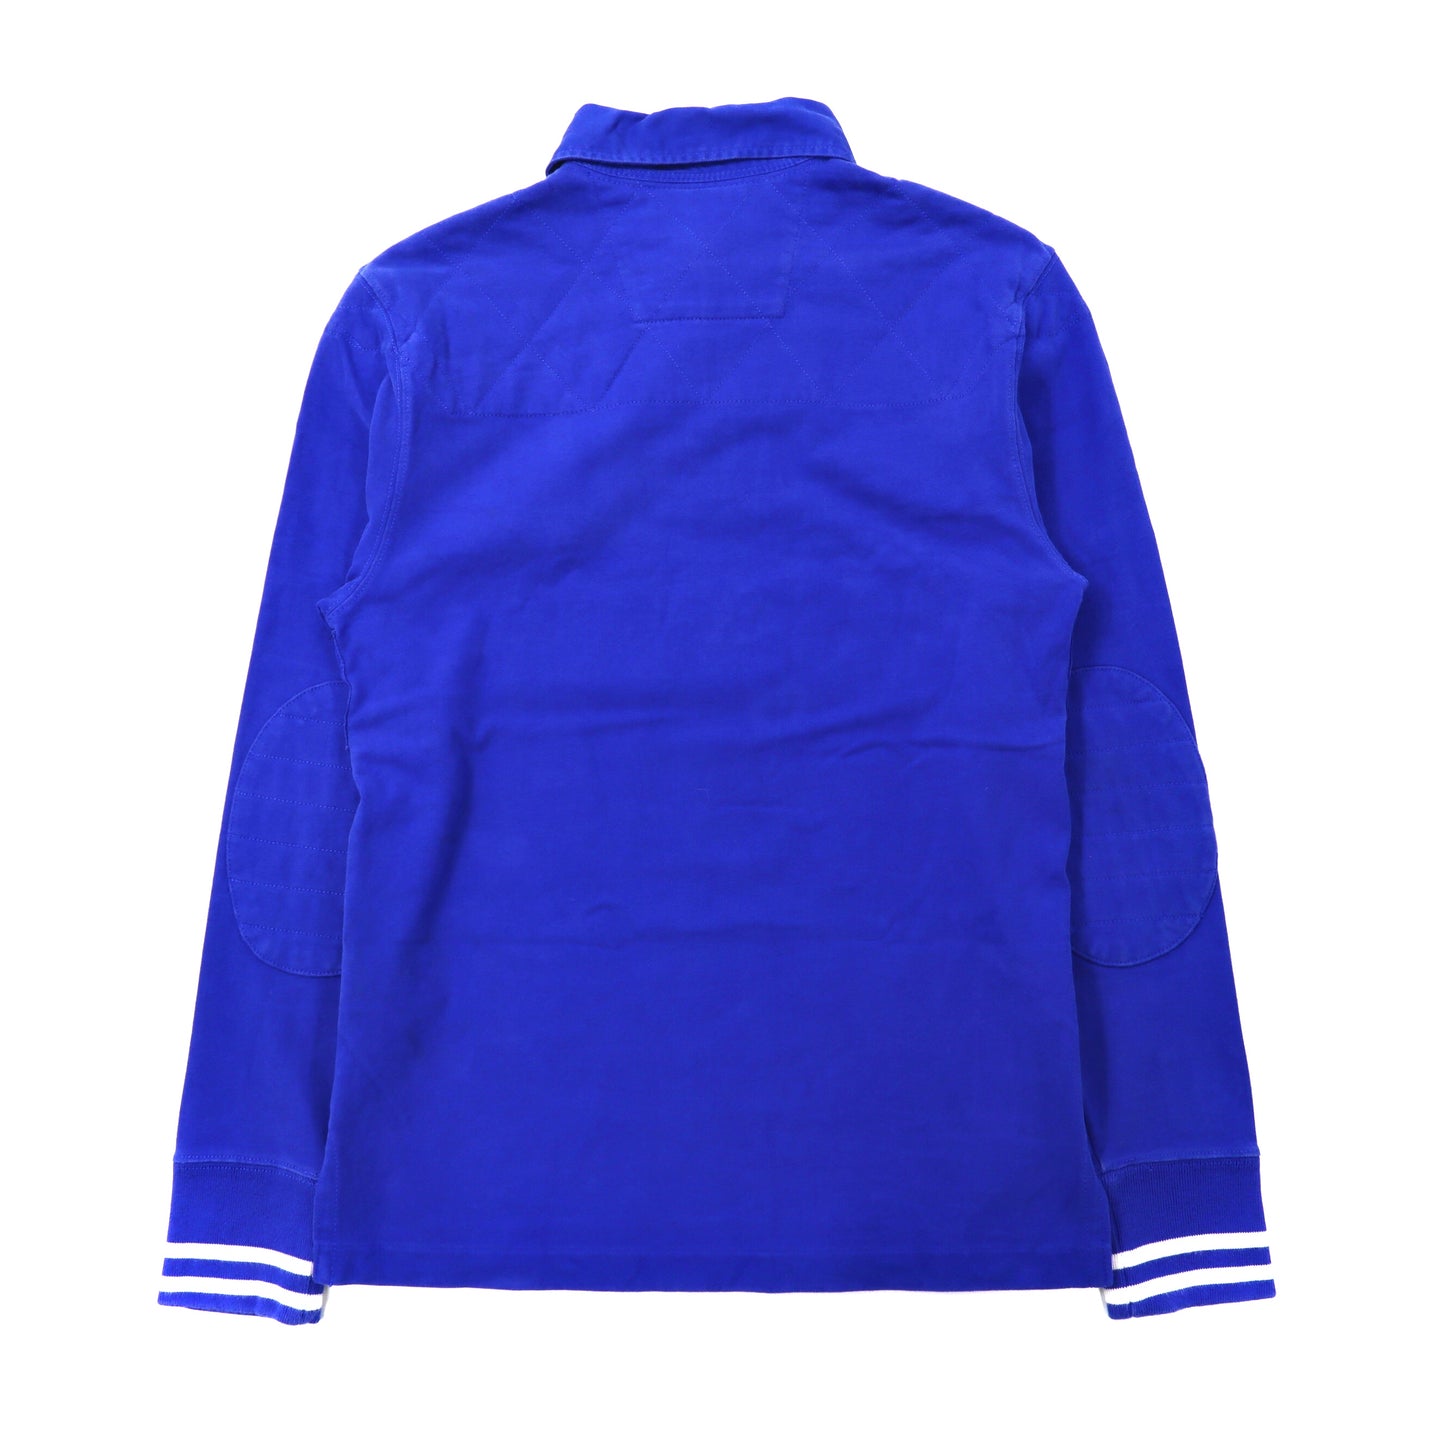 Polo by Ralph Lauren ラガーシャツ S ブルー コットン ビッグポニー刺繍 ESPANA